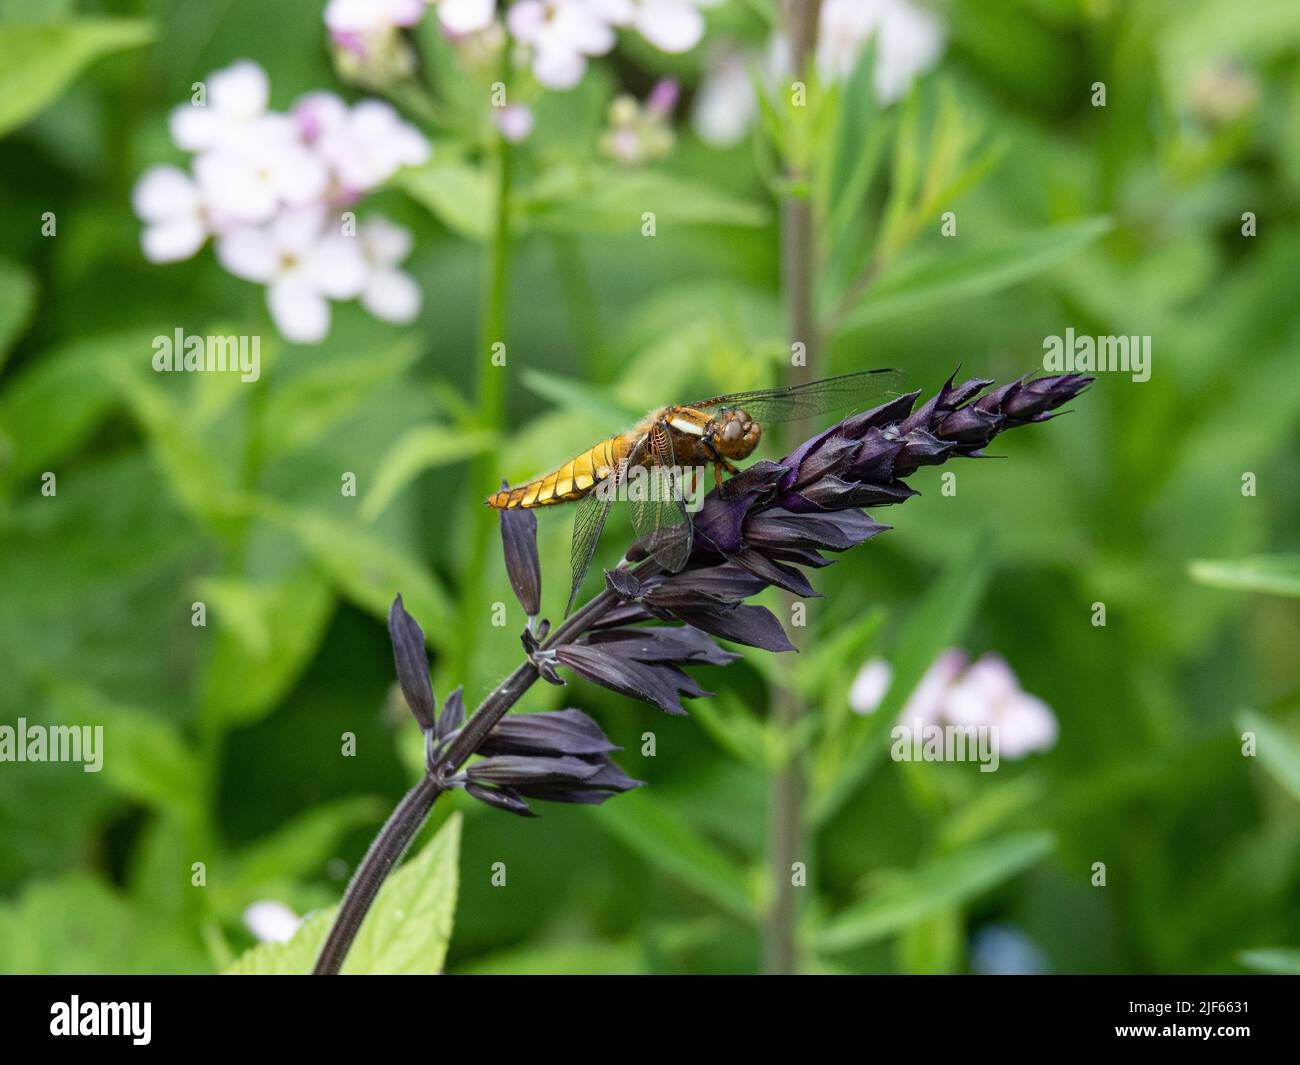 Una libellula depressia (Libellula depressia) a strisce dorate e nere appoggiata su un fiore scuro di Salvia Foto Stock